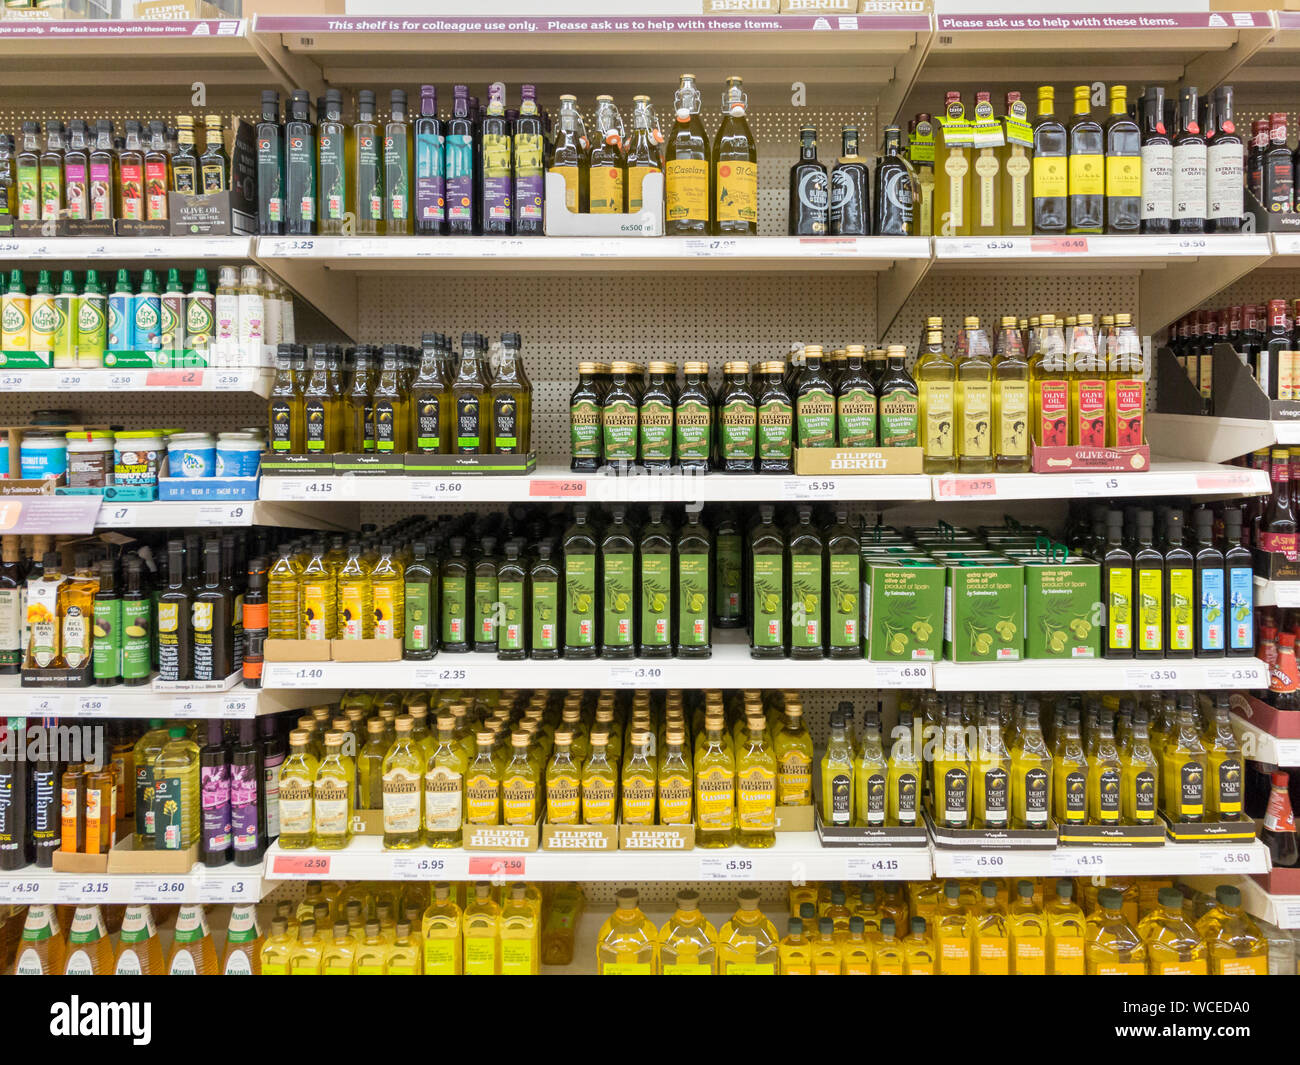 L'huile d'olive en vente sur une étagère de supermarché Sainsbury, UK Banque D'Images